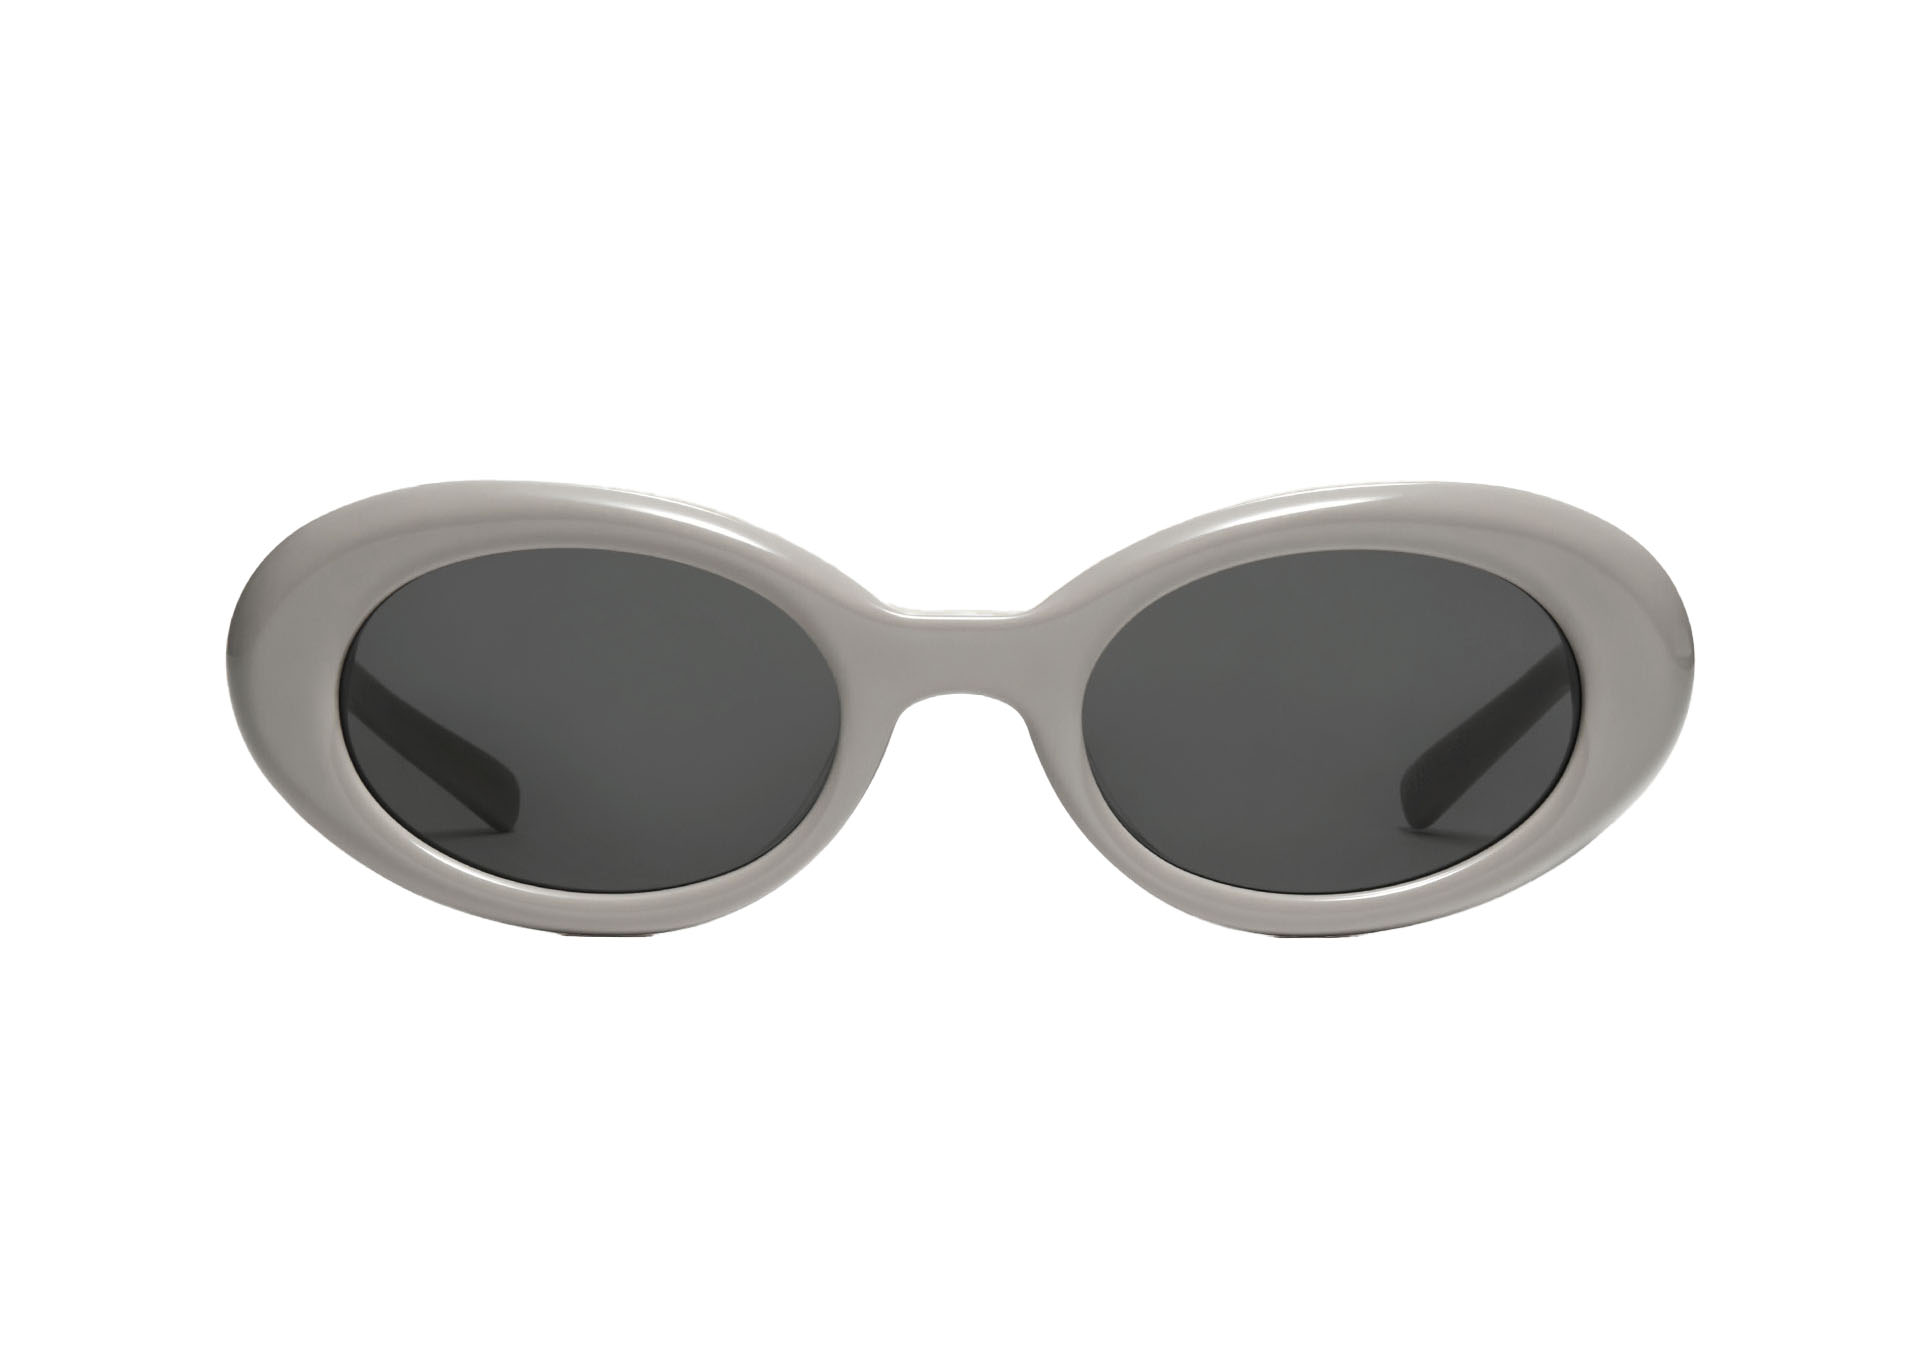 Gentle Monster Maison Margiela Oval Sunglasses Black MM005 01 in 